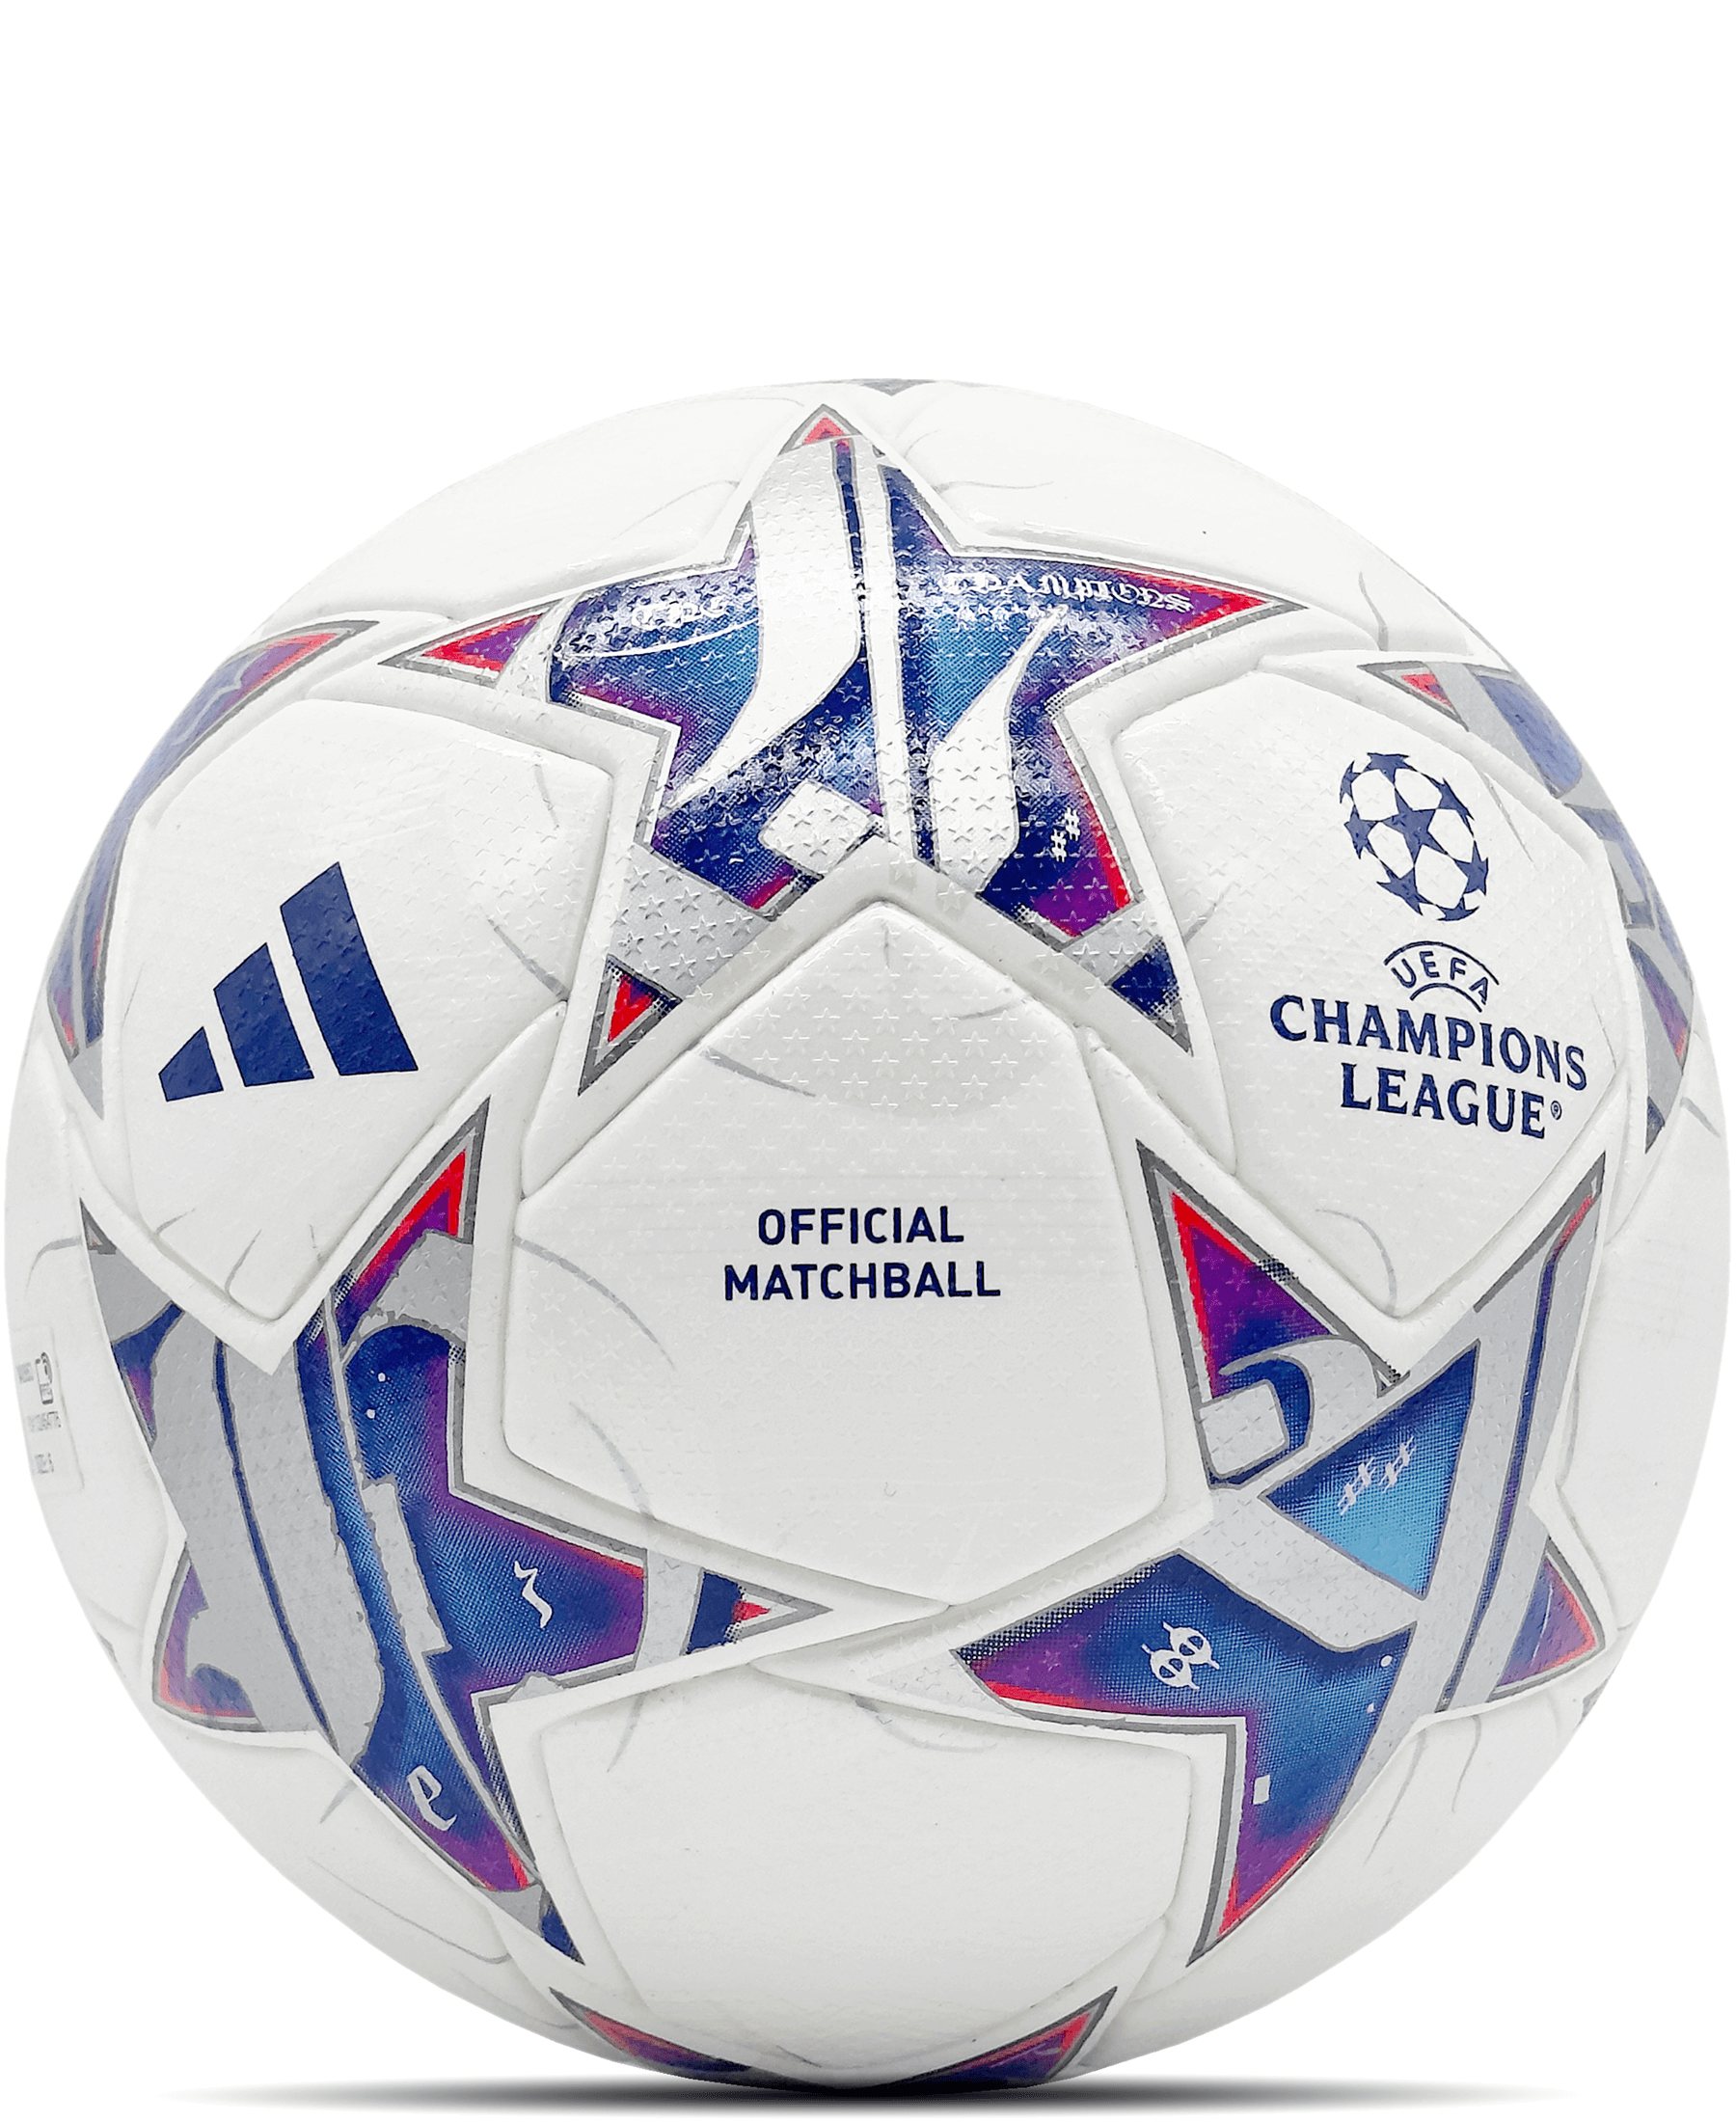 Der Adidas Official Match Ball UEFA Champions League Pro für die Saison 2023/2024 (IA0953) ist der Höhepunkt des Fußballs. Dieser offizielle Spielball bietet präzise Flugbahn, exzellente Ballkontrolle und hohe Strapazierfähigkeit. Mit seinem ansprechenden Design und den Champions League-Logos ist er perfekt für Top-Level-Spiele. Zeige deine Leidenschaft für Fußball auf höchstem Niveau. Hol dir diesen hochwertigen Spielball jetzt bei SHOP4TEAMSPORT. Geeignet für Wettkämpfe und Training auf höchstem Niveau.